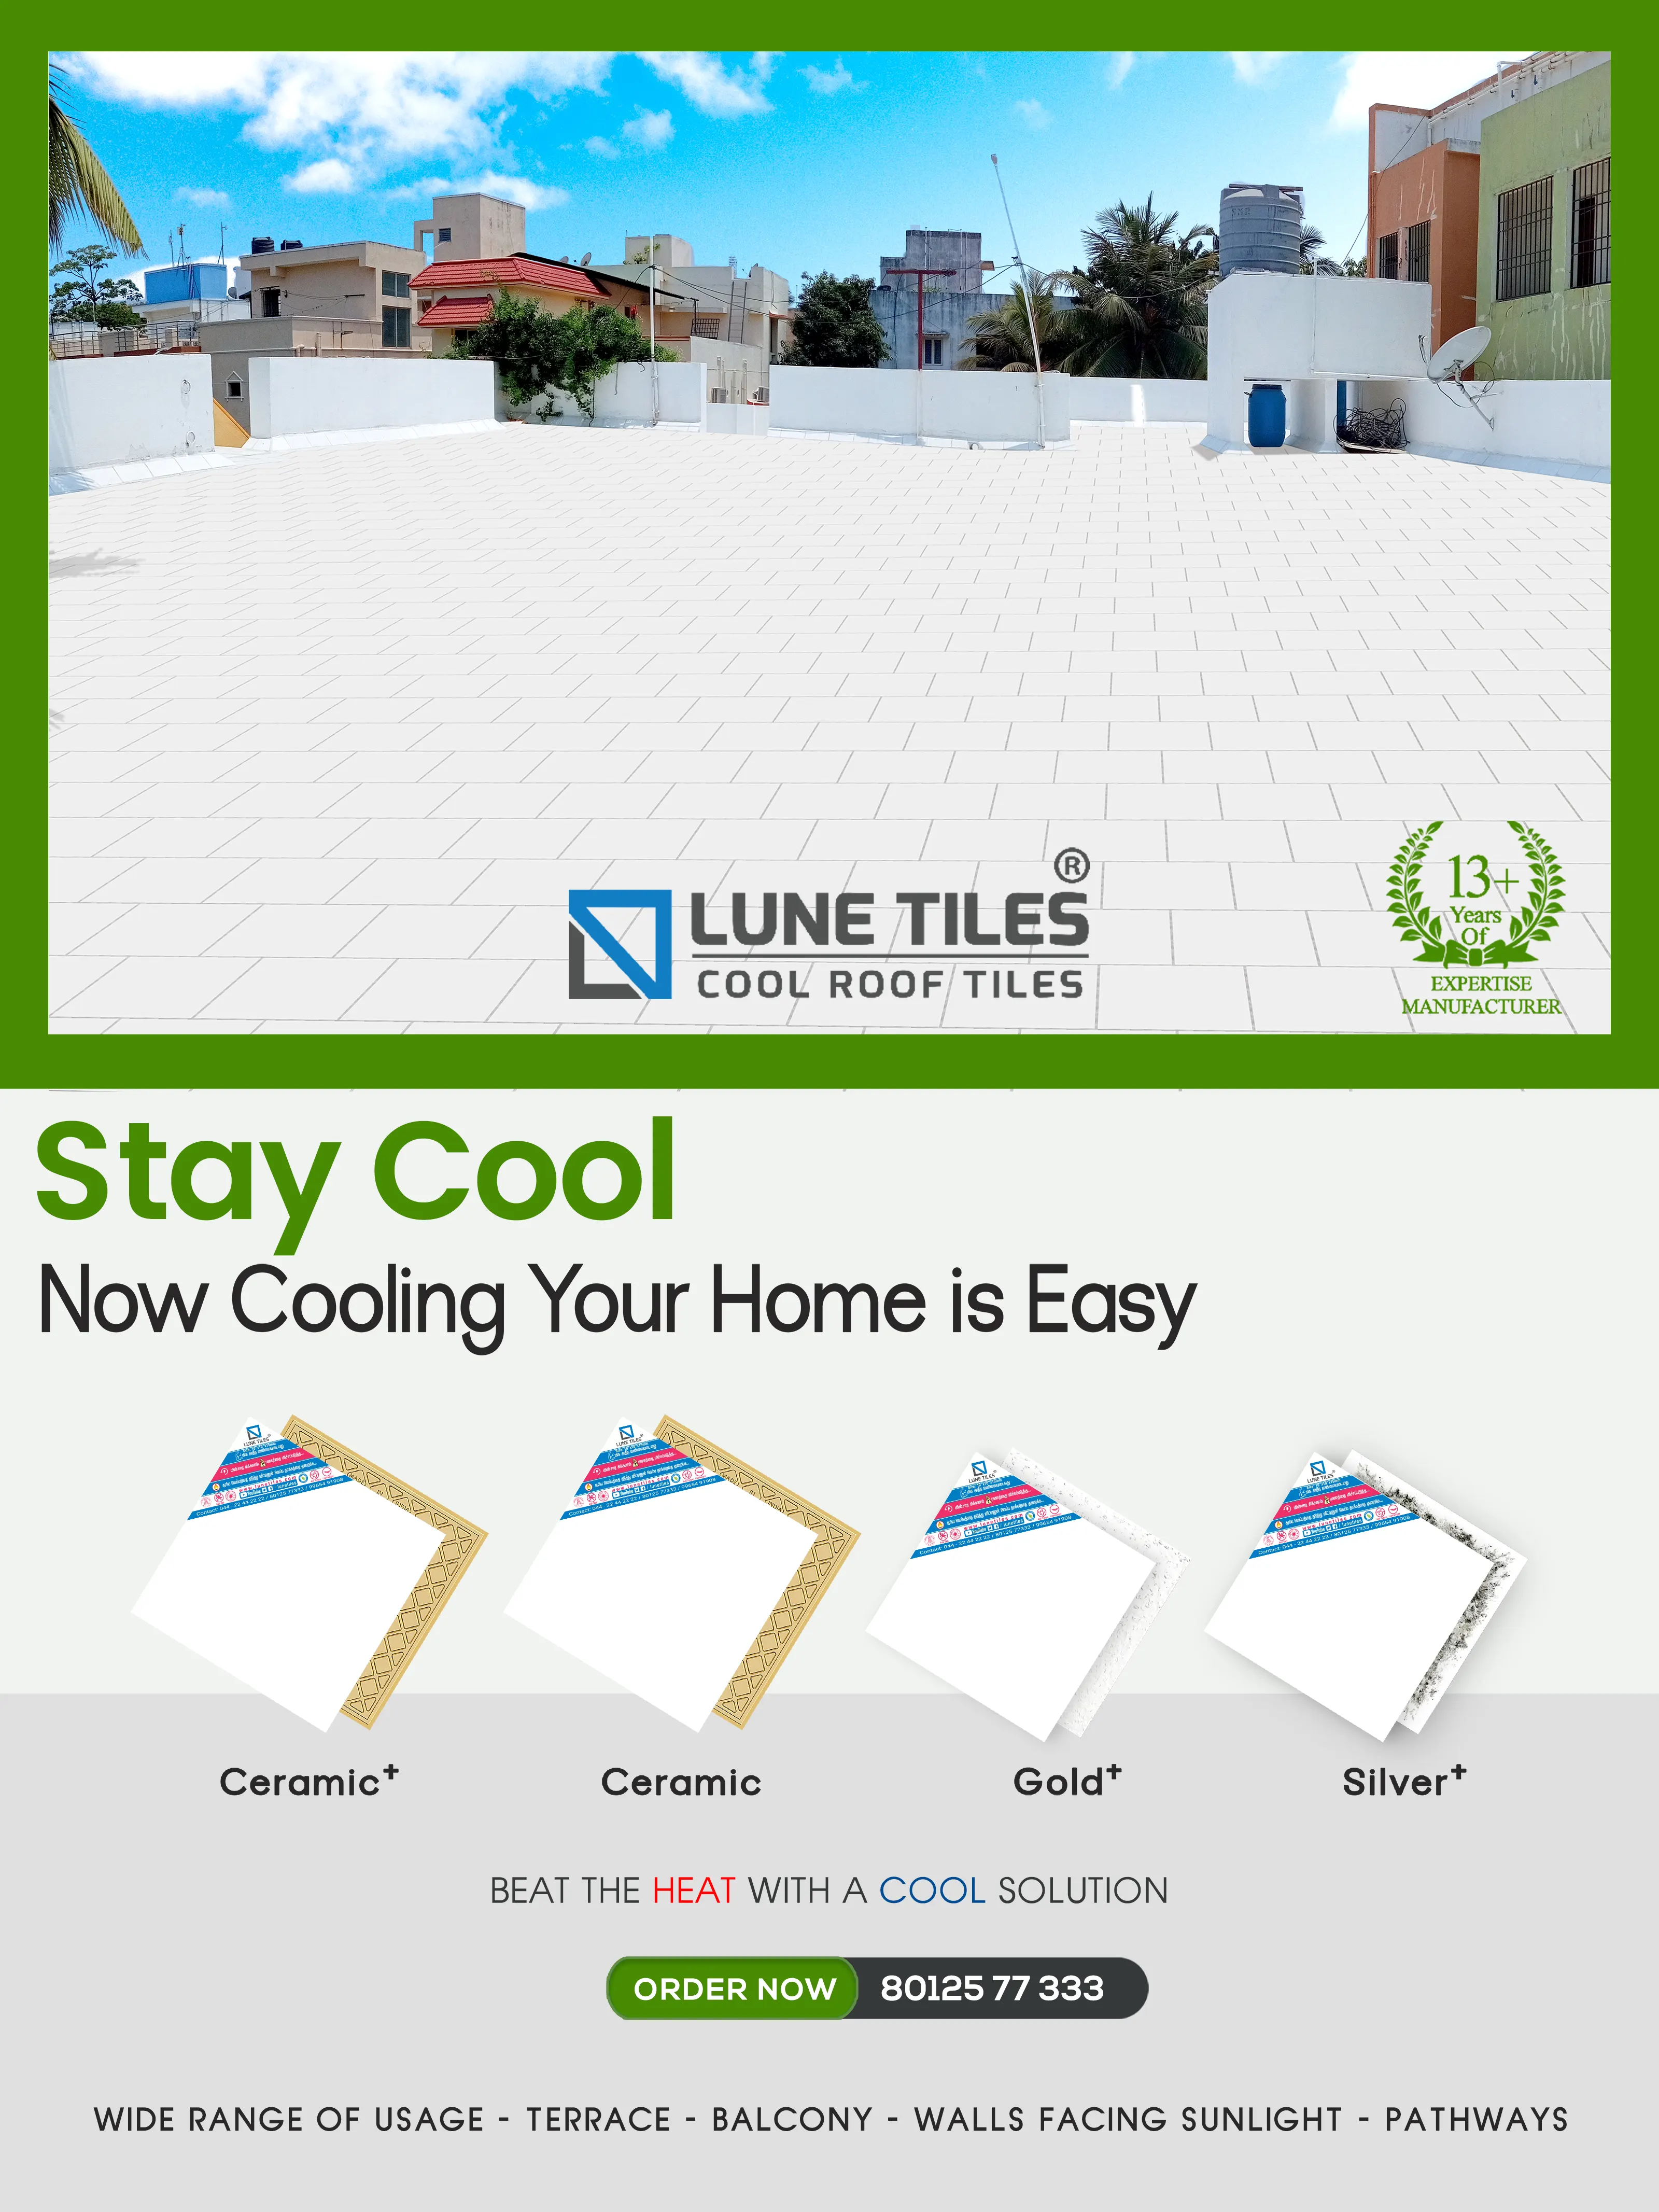 White roof tiles